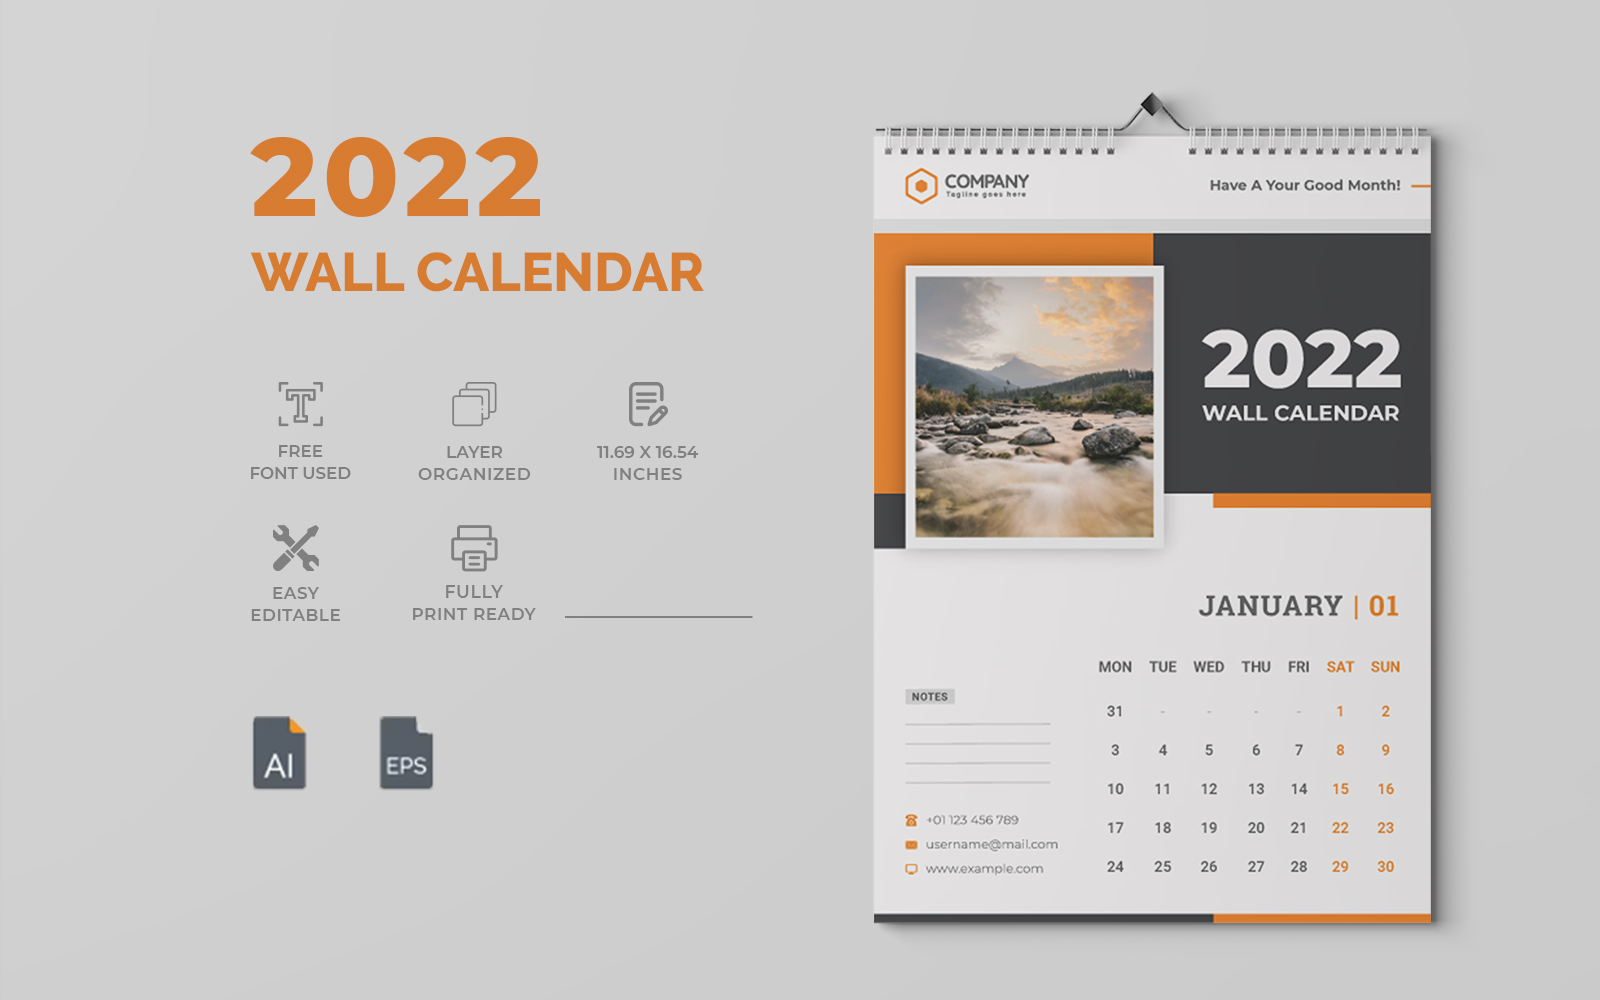 Modern 2022 Wall Calendar Design